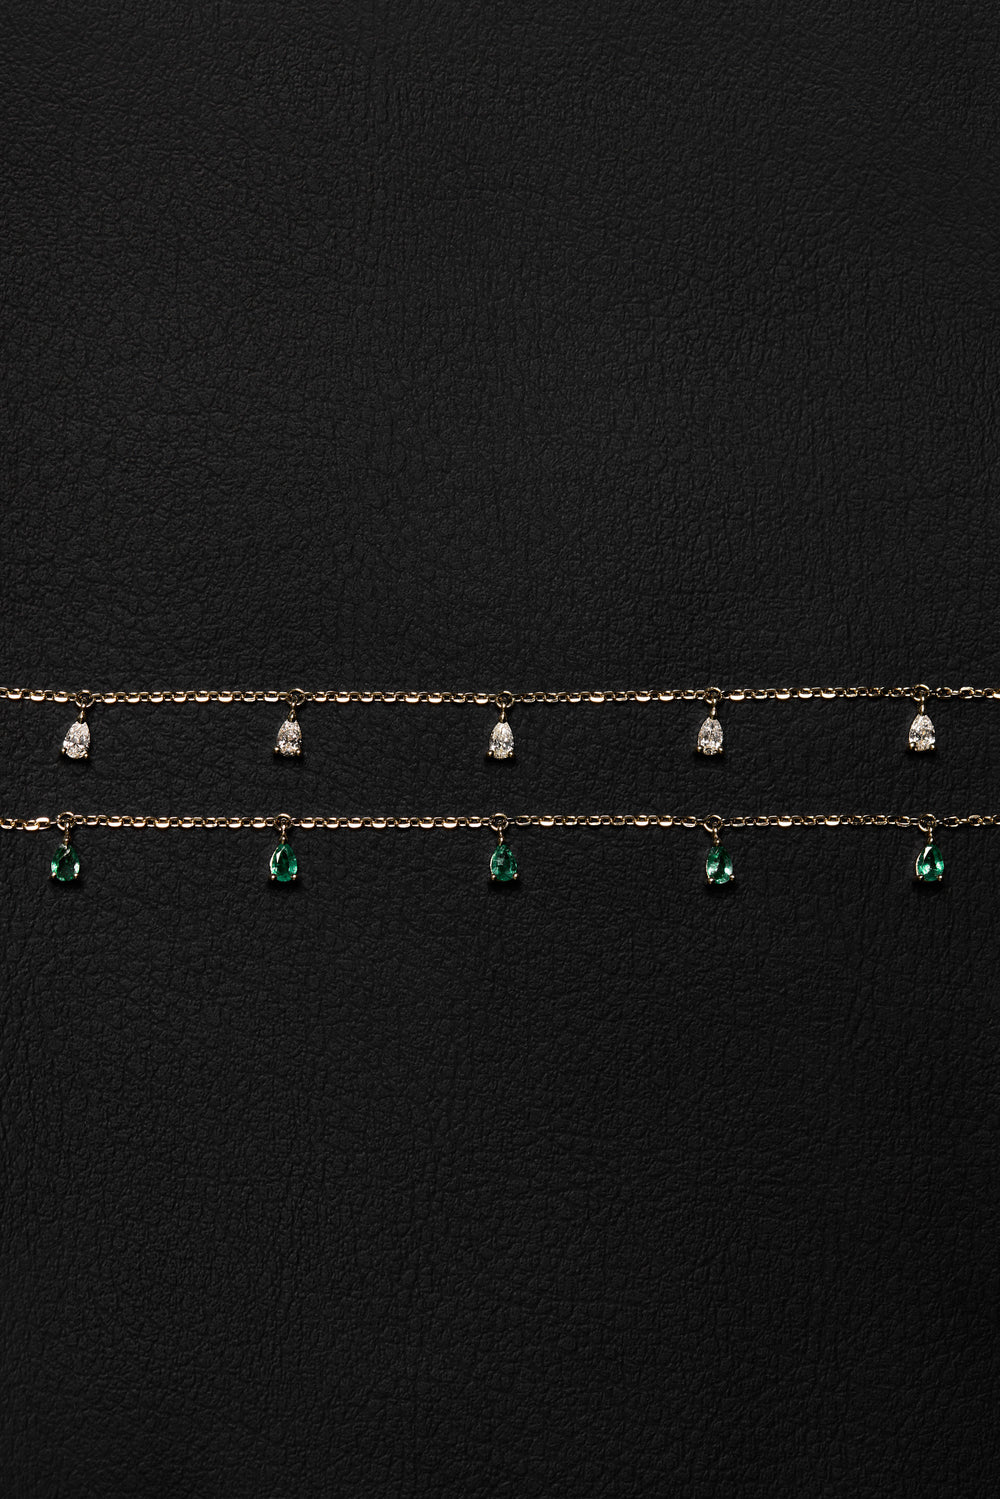 Ilona Pear Emerald Necklace | 18K Yellow Gold| Natasha Schweitzer